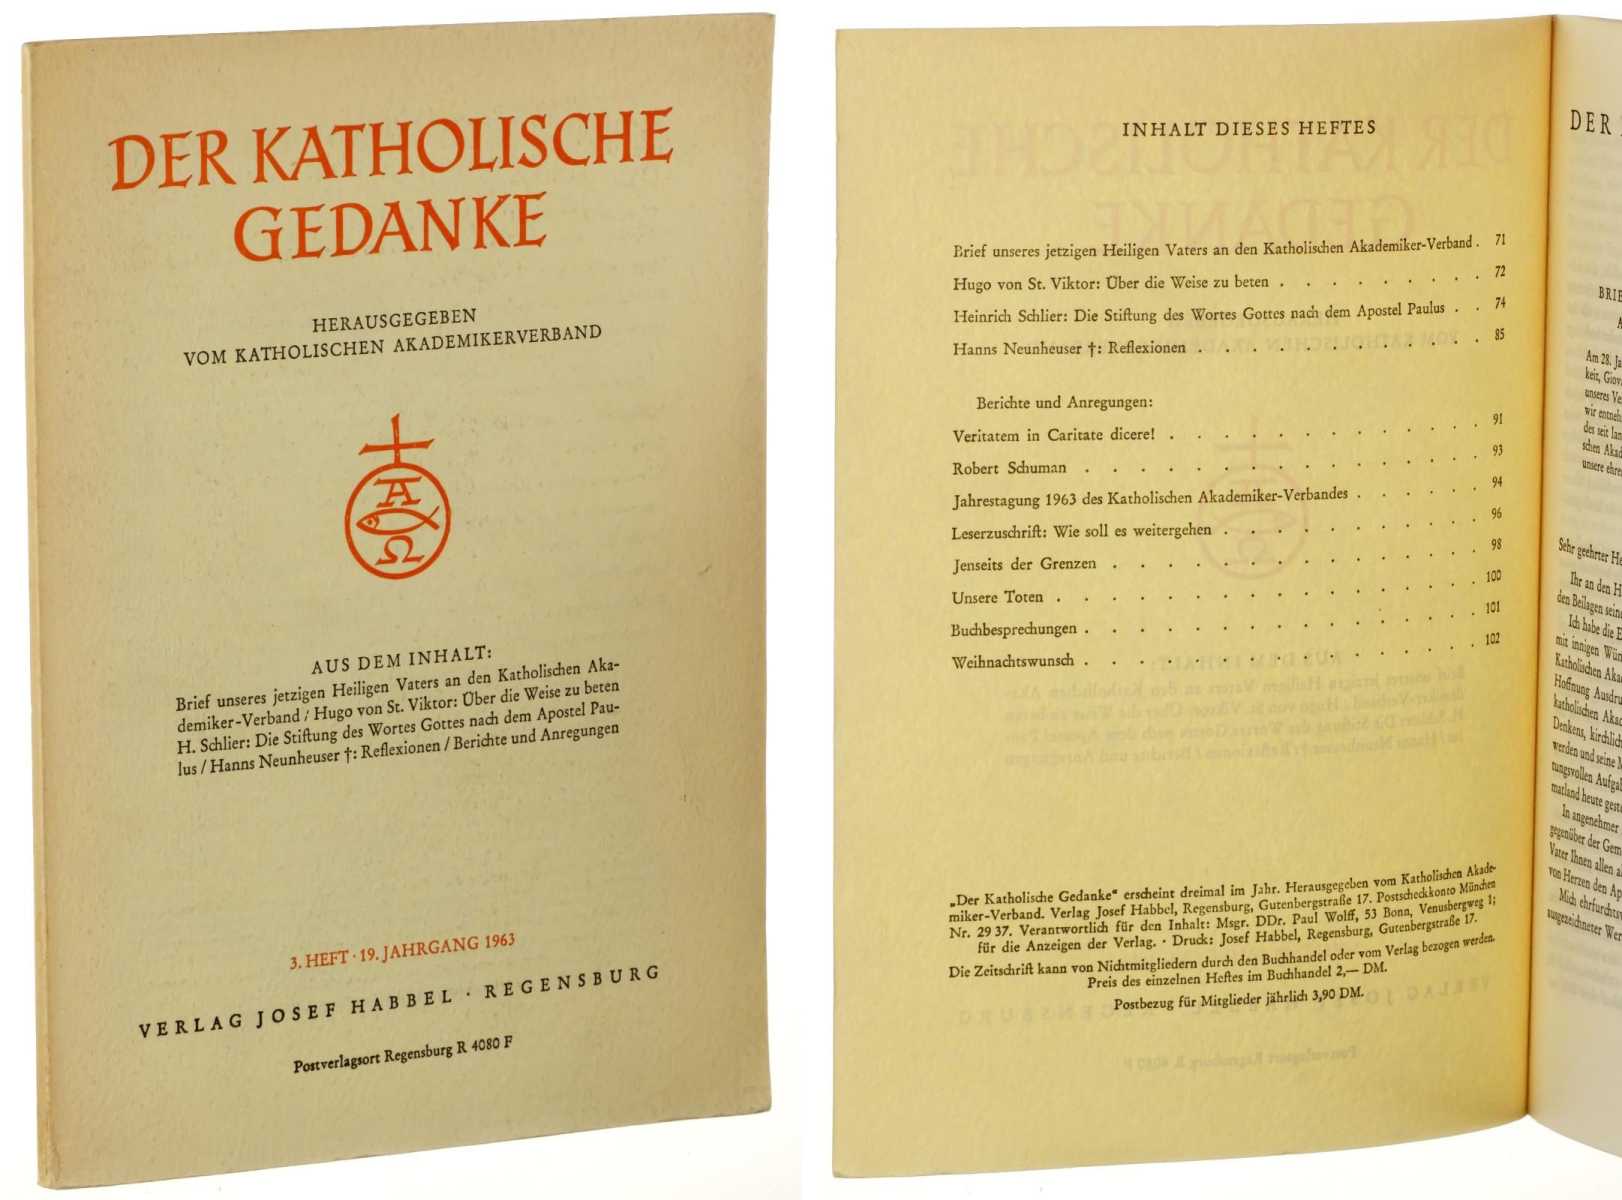   Der katholische Gedanke. Hrsg. vom Katholischen Akademikerverband. 